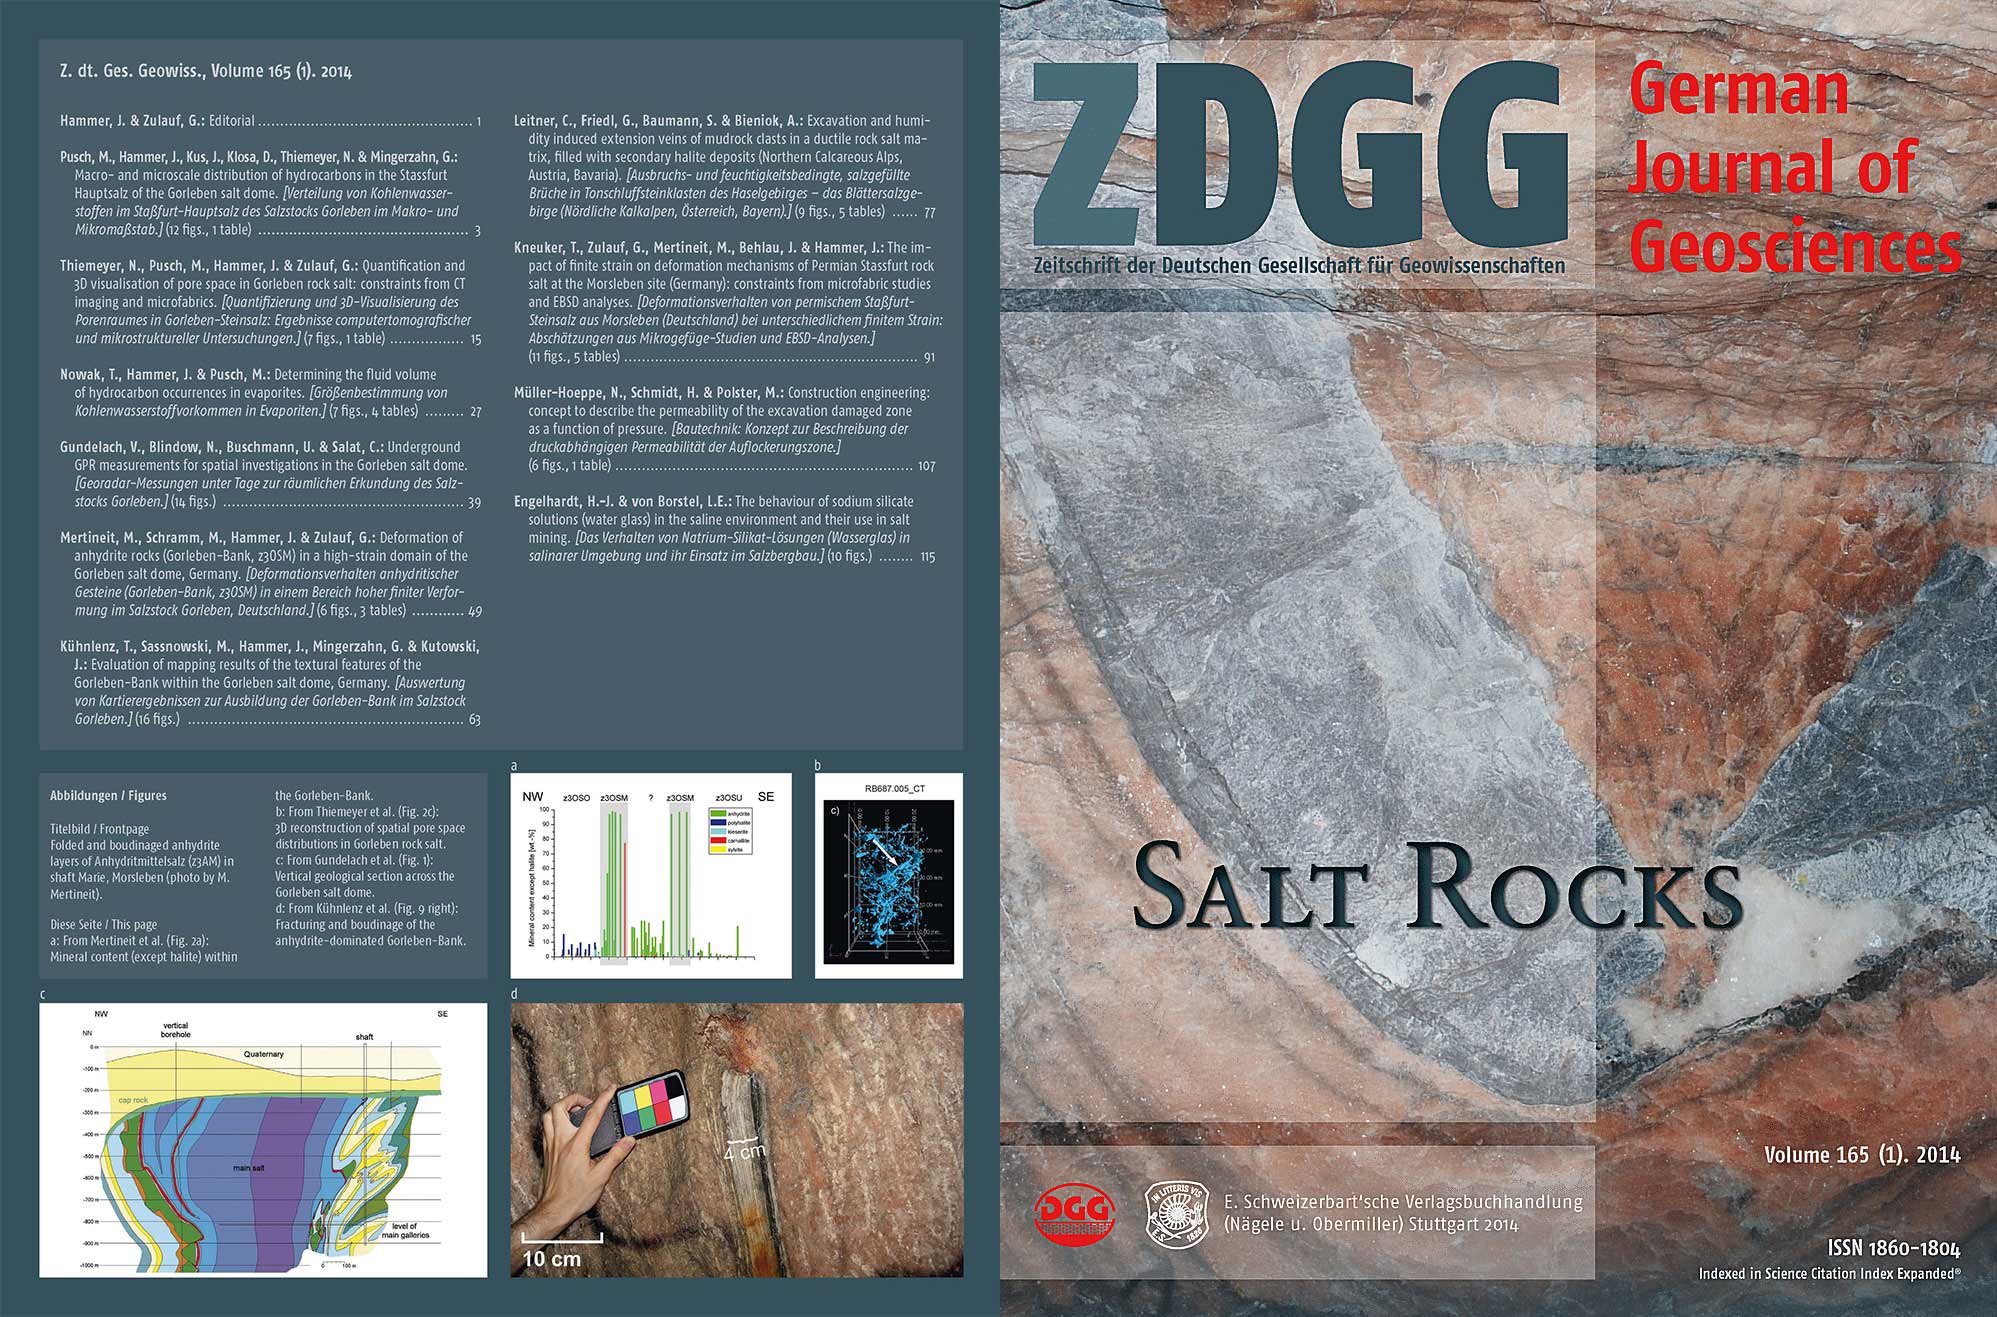 Cover und Rückseite der Publikation "Salt rocks" der ZDGG, Volume 165 (1)